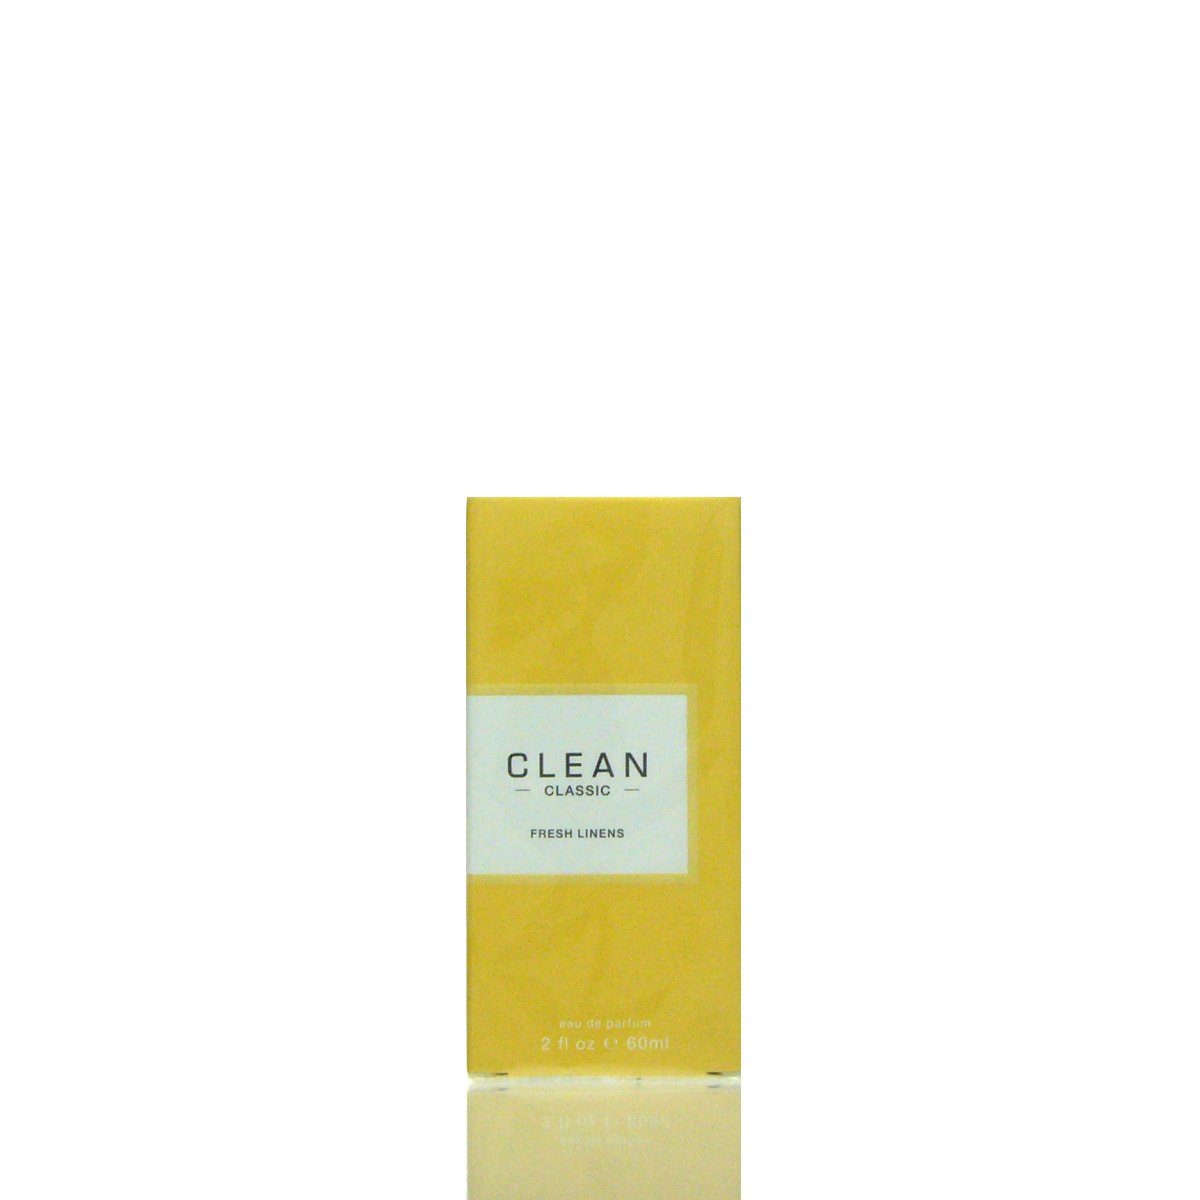 Eau CLEAN Eau Parfum 60 ml Linens Parfum de Clean de 2020 Fresh